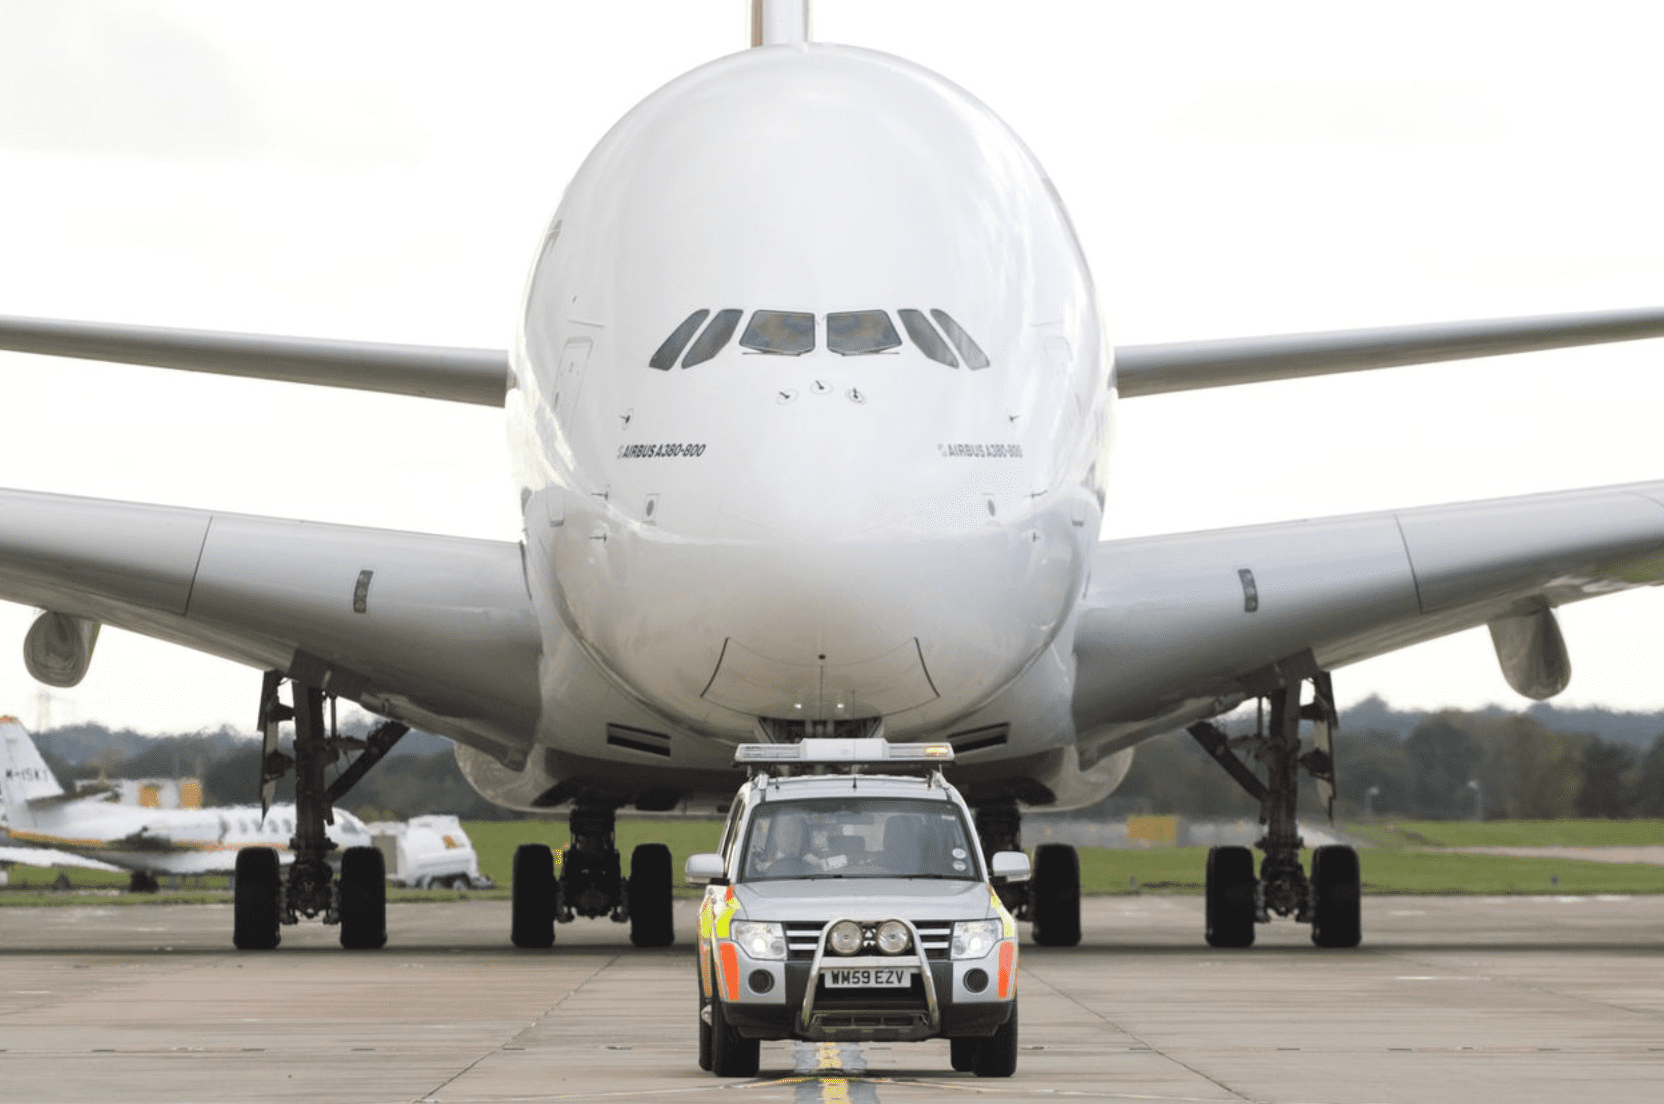 Airbus A380 của Emirates đang lăn bánh vào nhà ga tại sân bay Manchester, Anh. Ảnh: Chris Retcliffe/Bloomberg